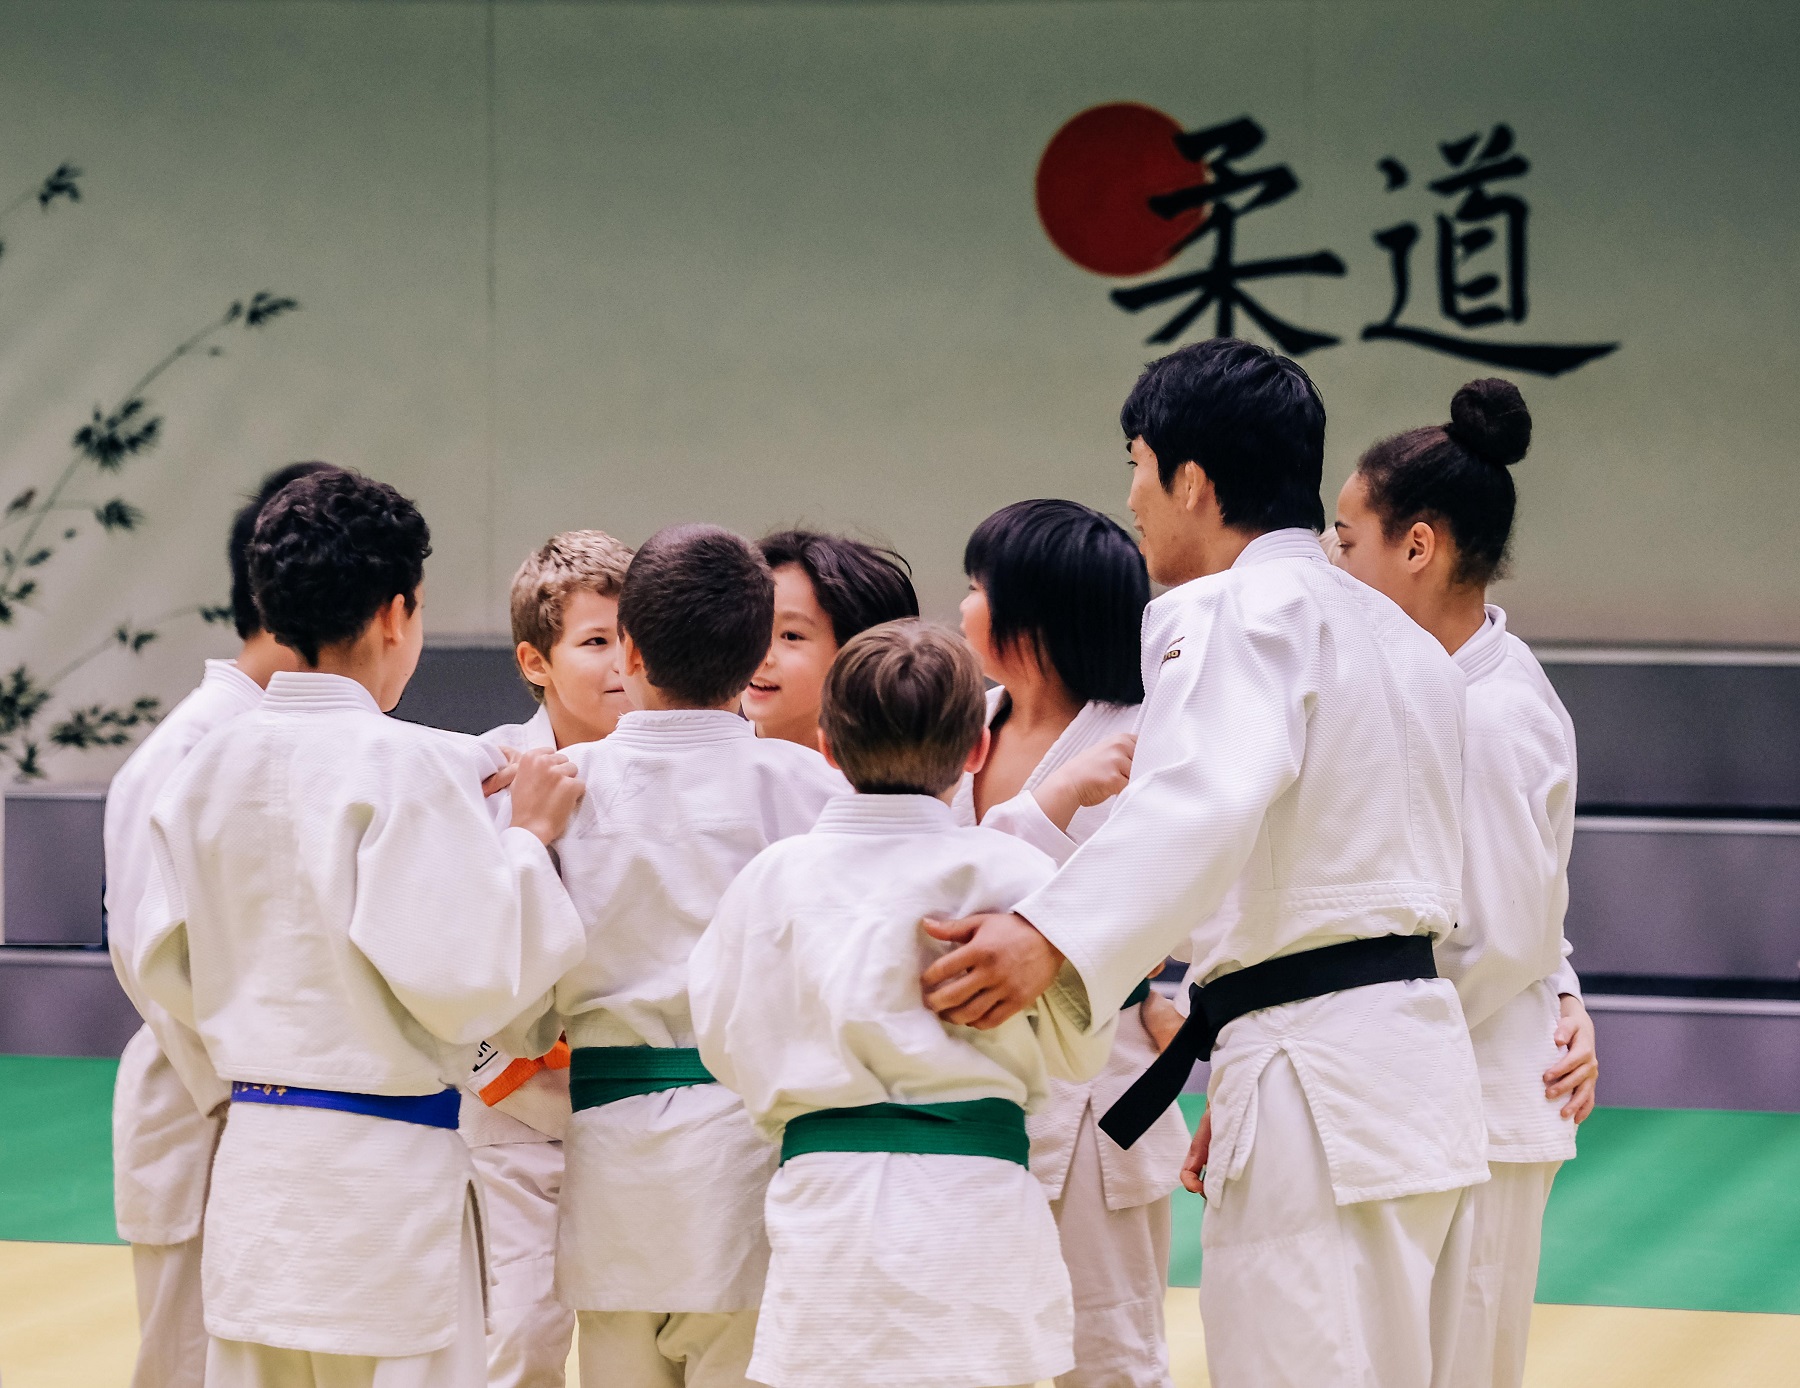 Cours d’initiation au judo – un beau sport pour votre enfant, inscrivez-le!